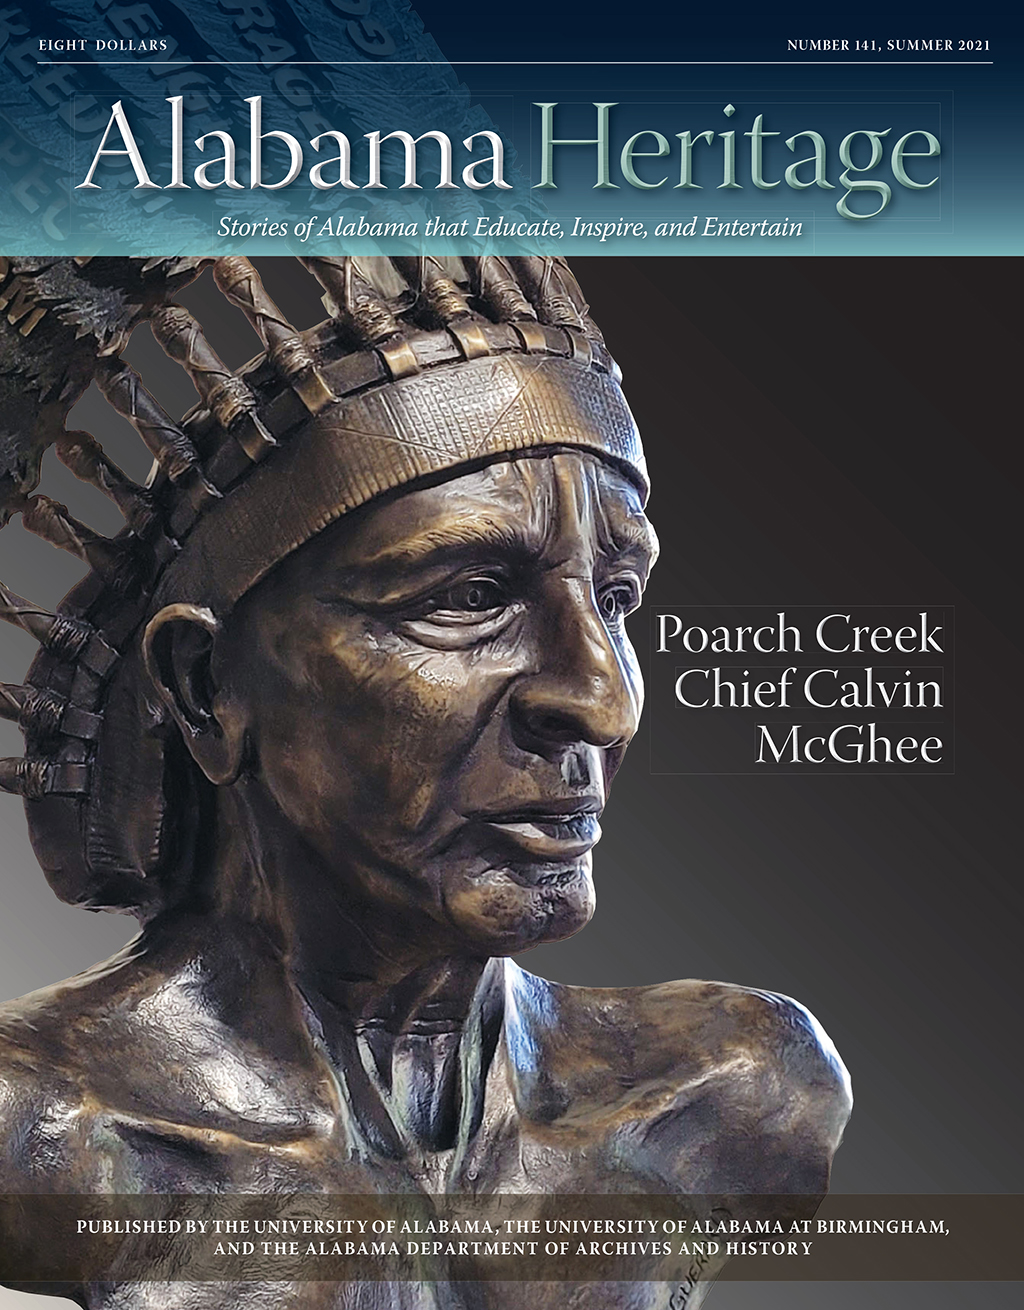 Alabama Heritage Celebrates 35 Years Of Publishing University Of